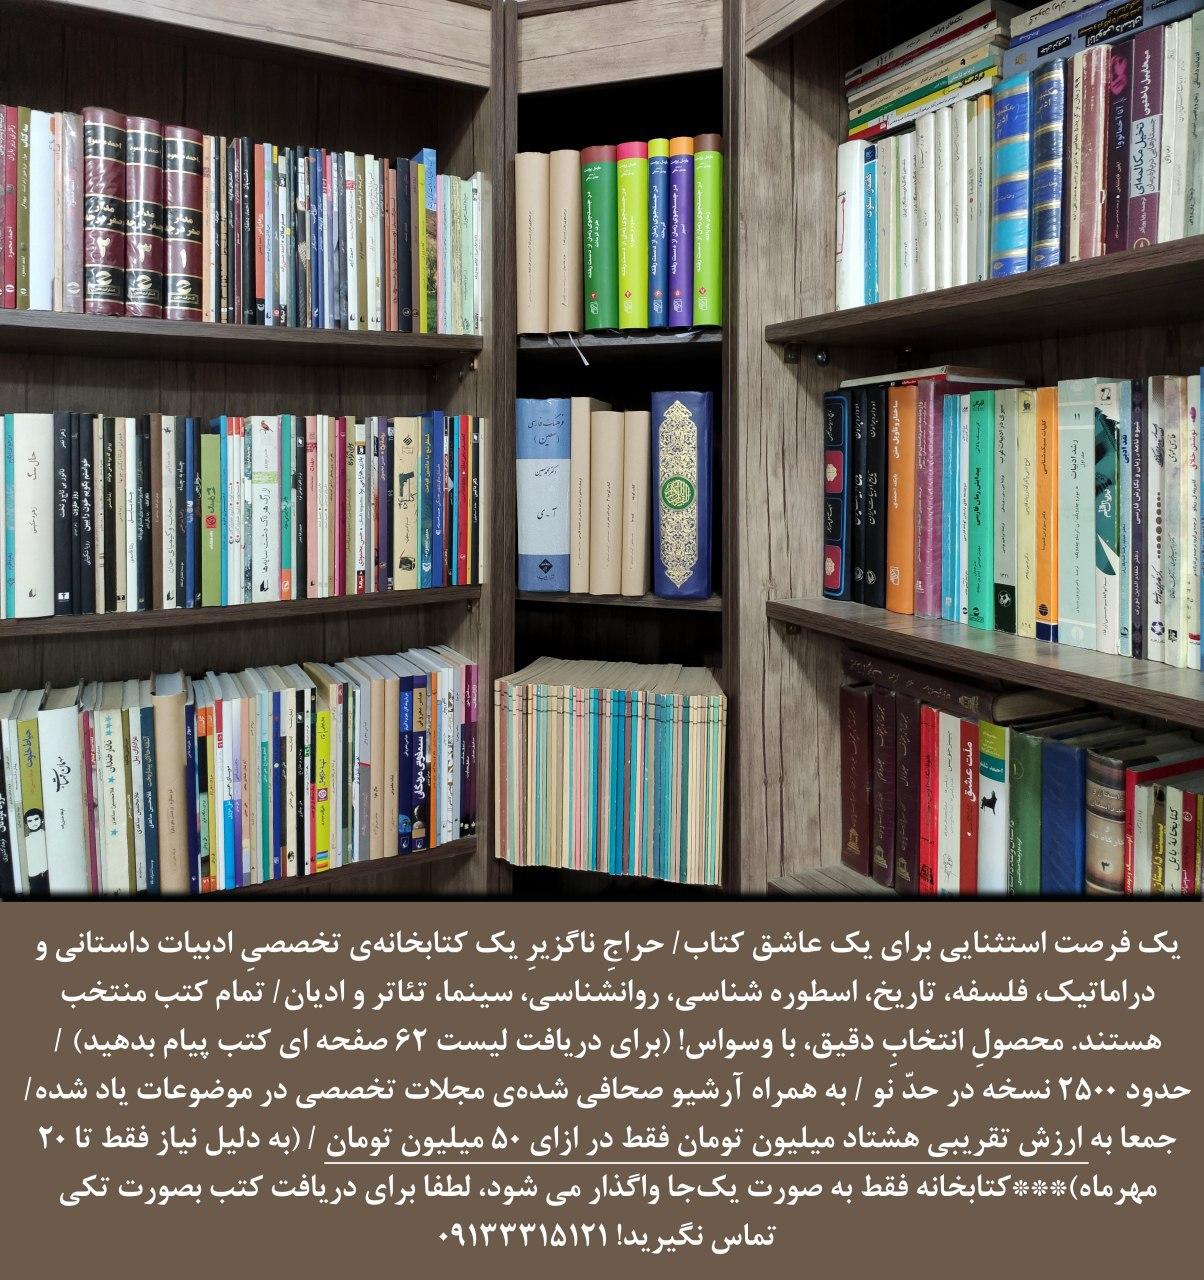 حراج کتابخانه شخصی یکی از نویسندگان سرشناس نجف آباد